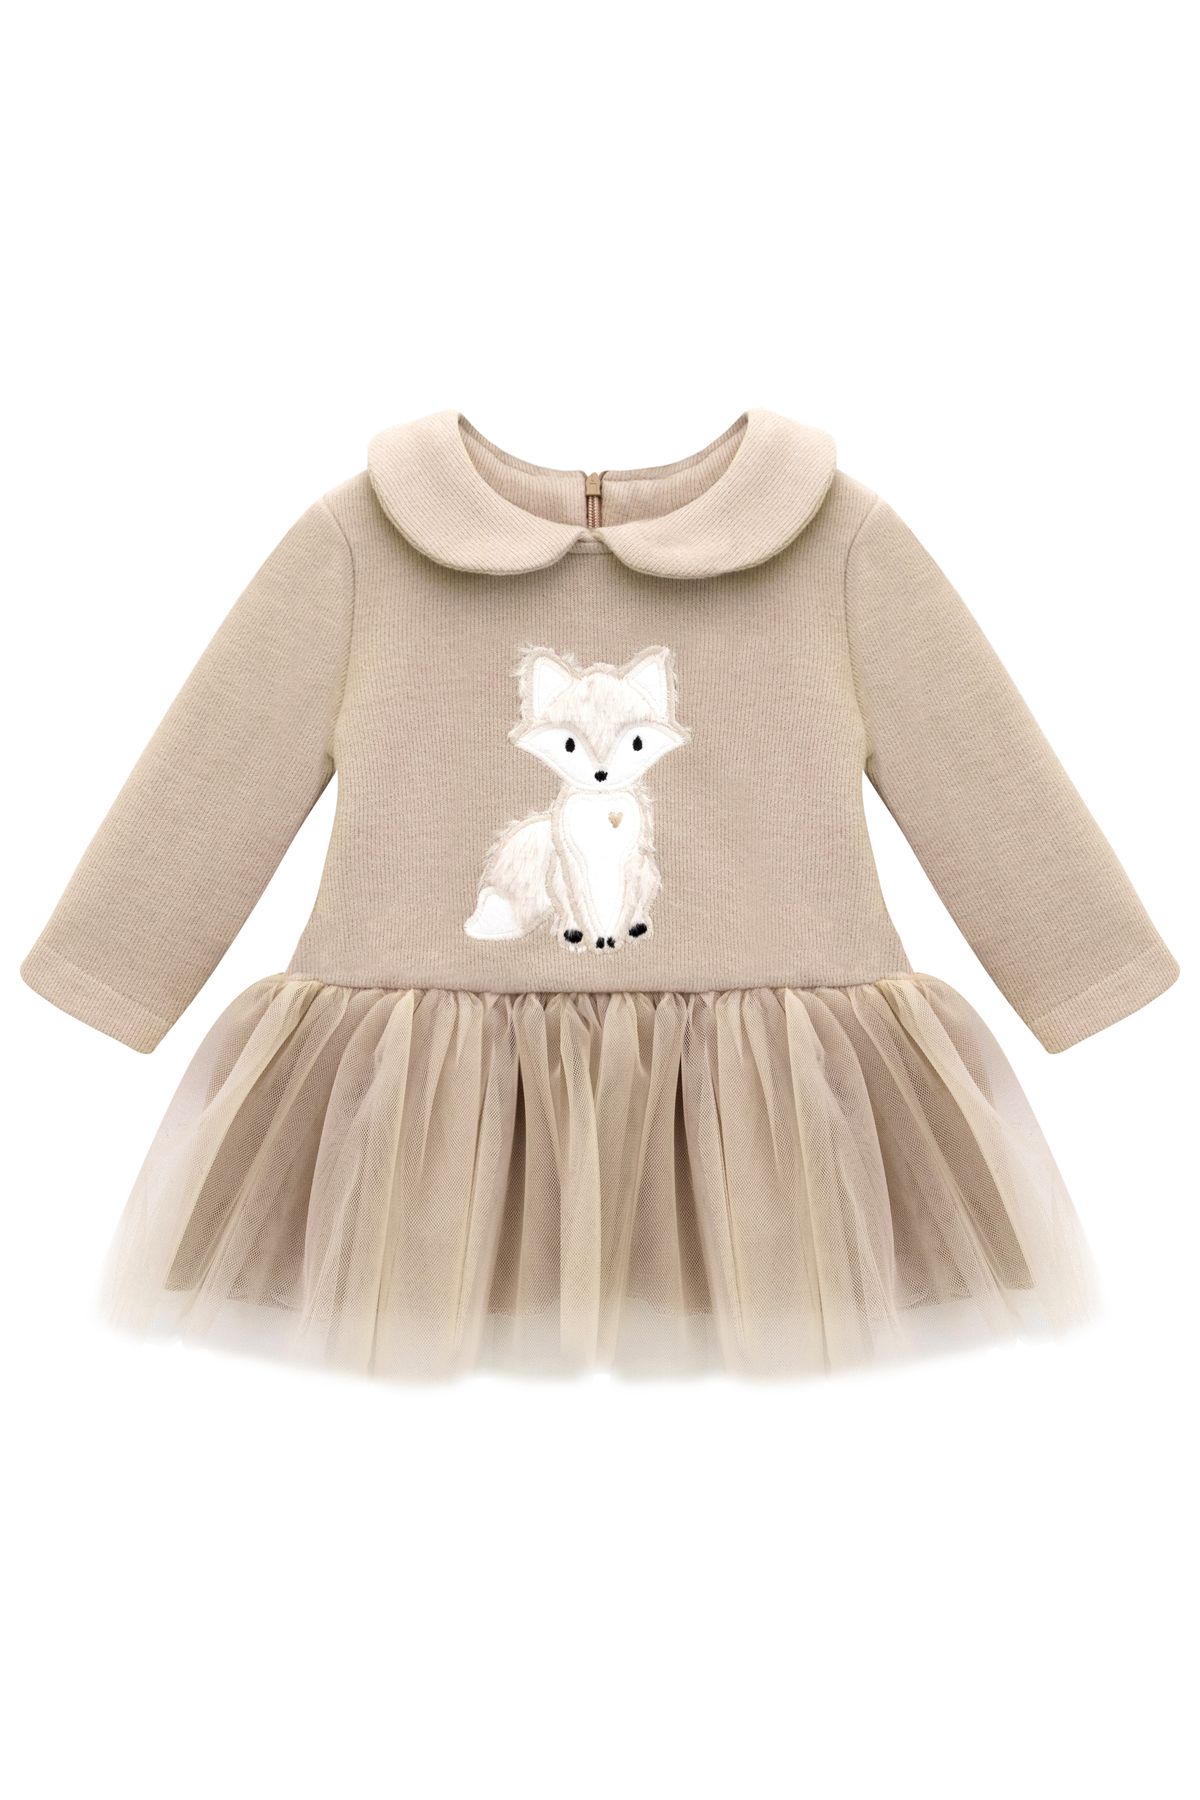 Lilax Kız Bebek Elbise Nakışlı Tüllü Polo Yaka Doğum Günü Bej